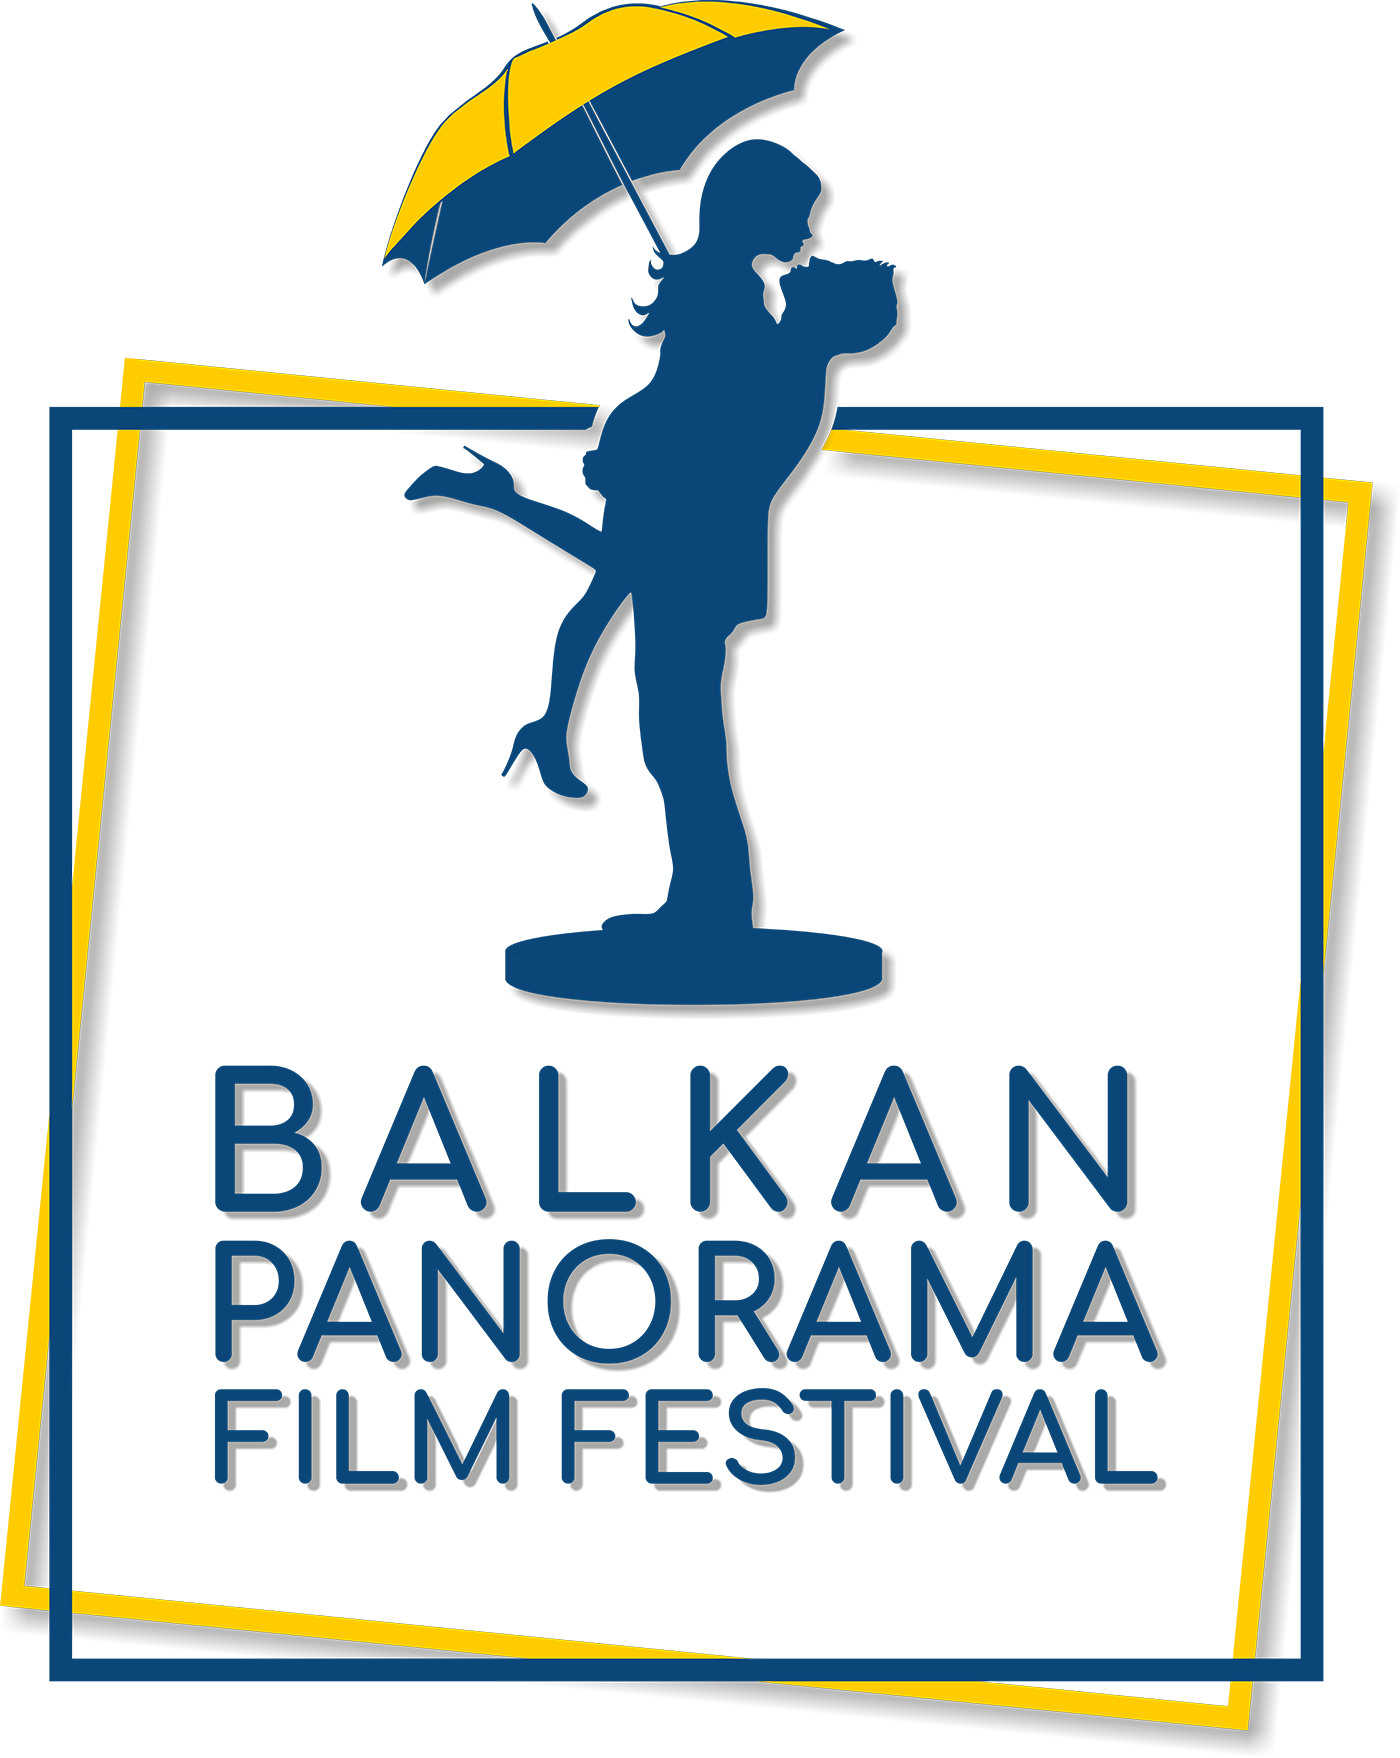 Balkan Panorama Film Festival